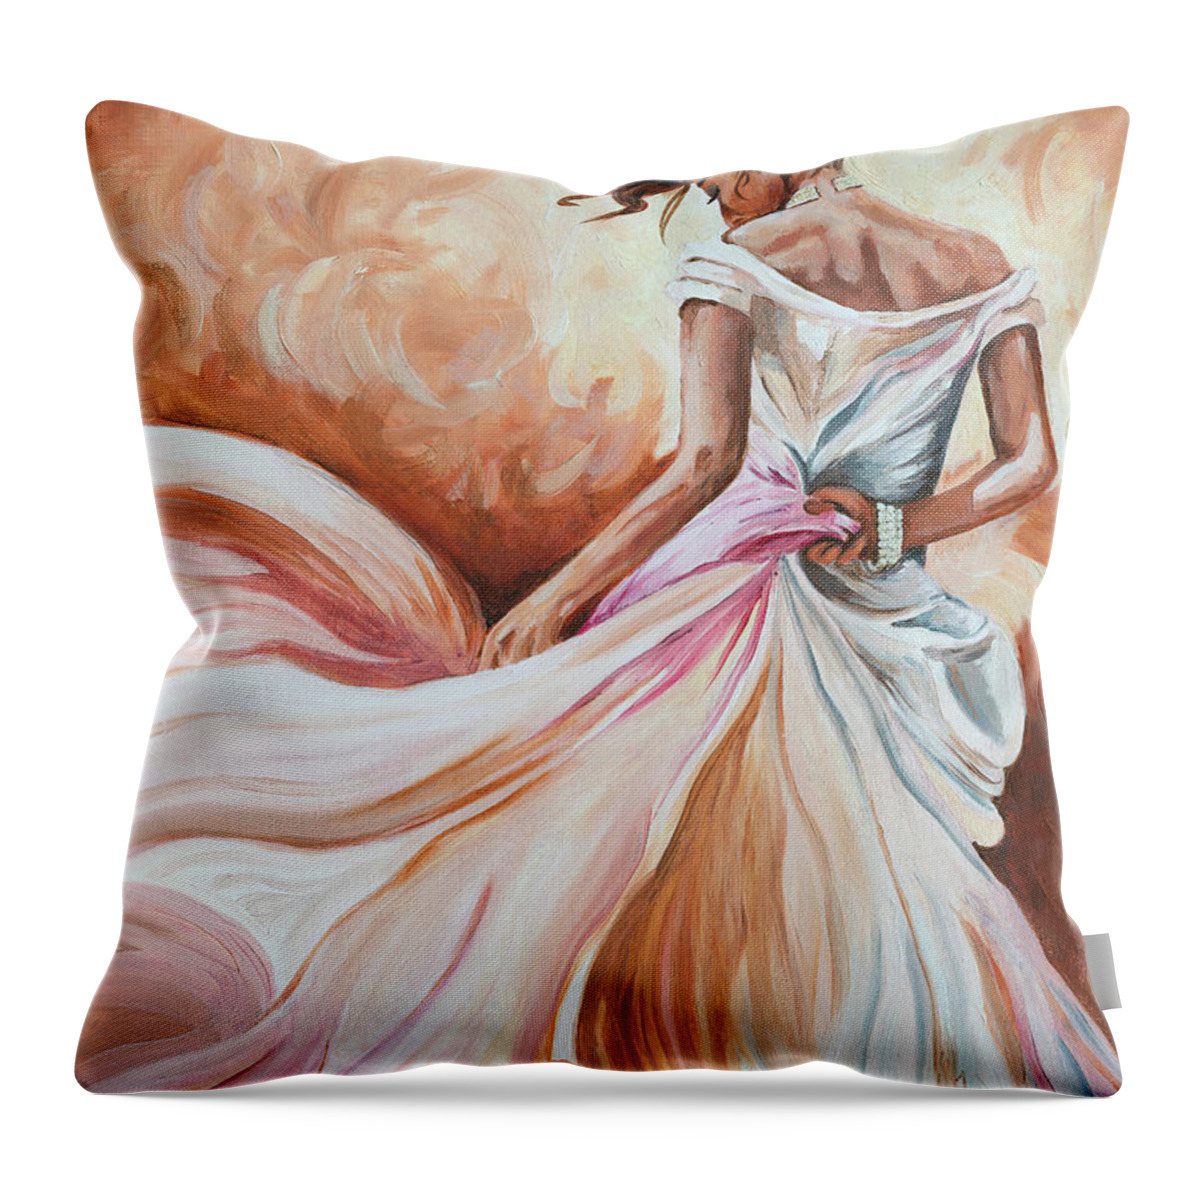 Dancer Throw Pillow featuring the painting Vuelta II by Rachel Emmett